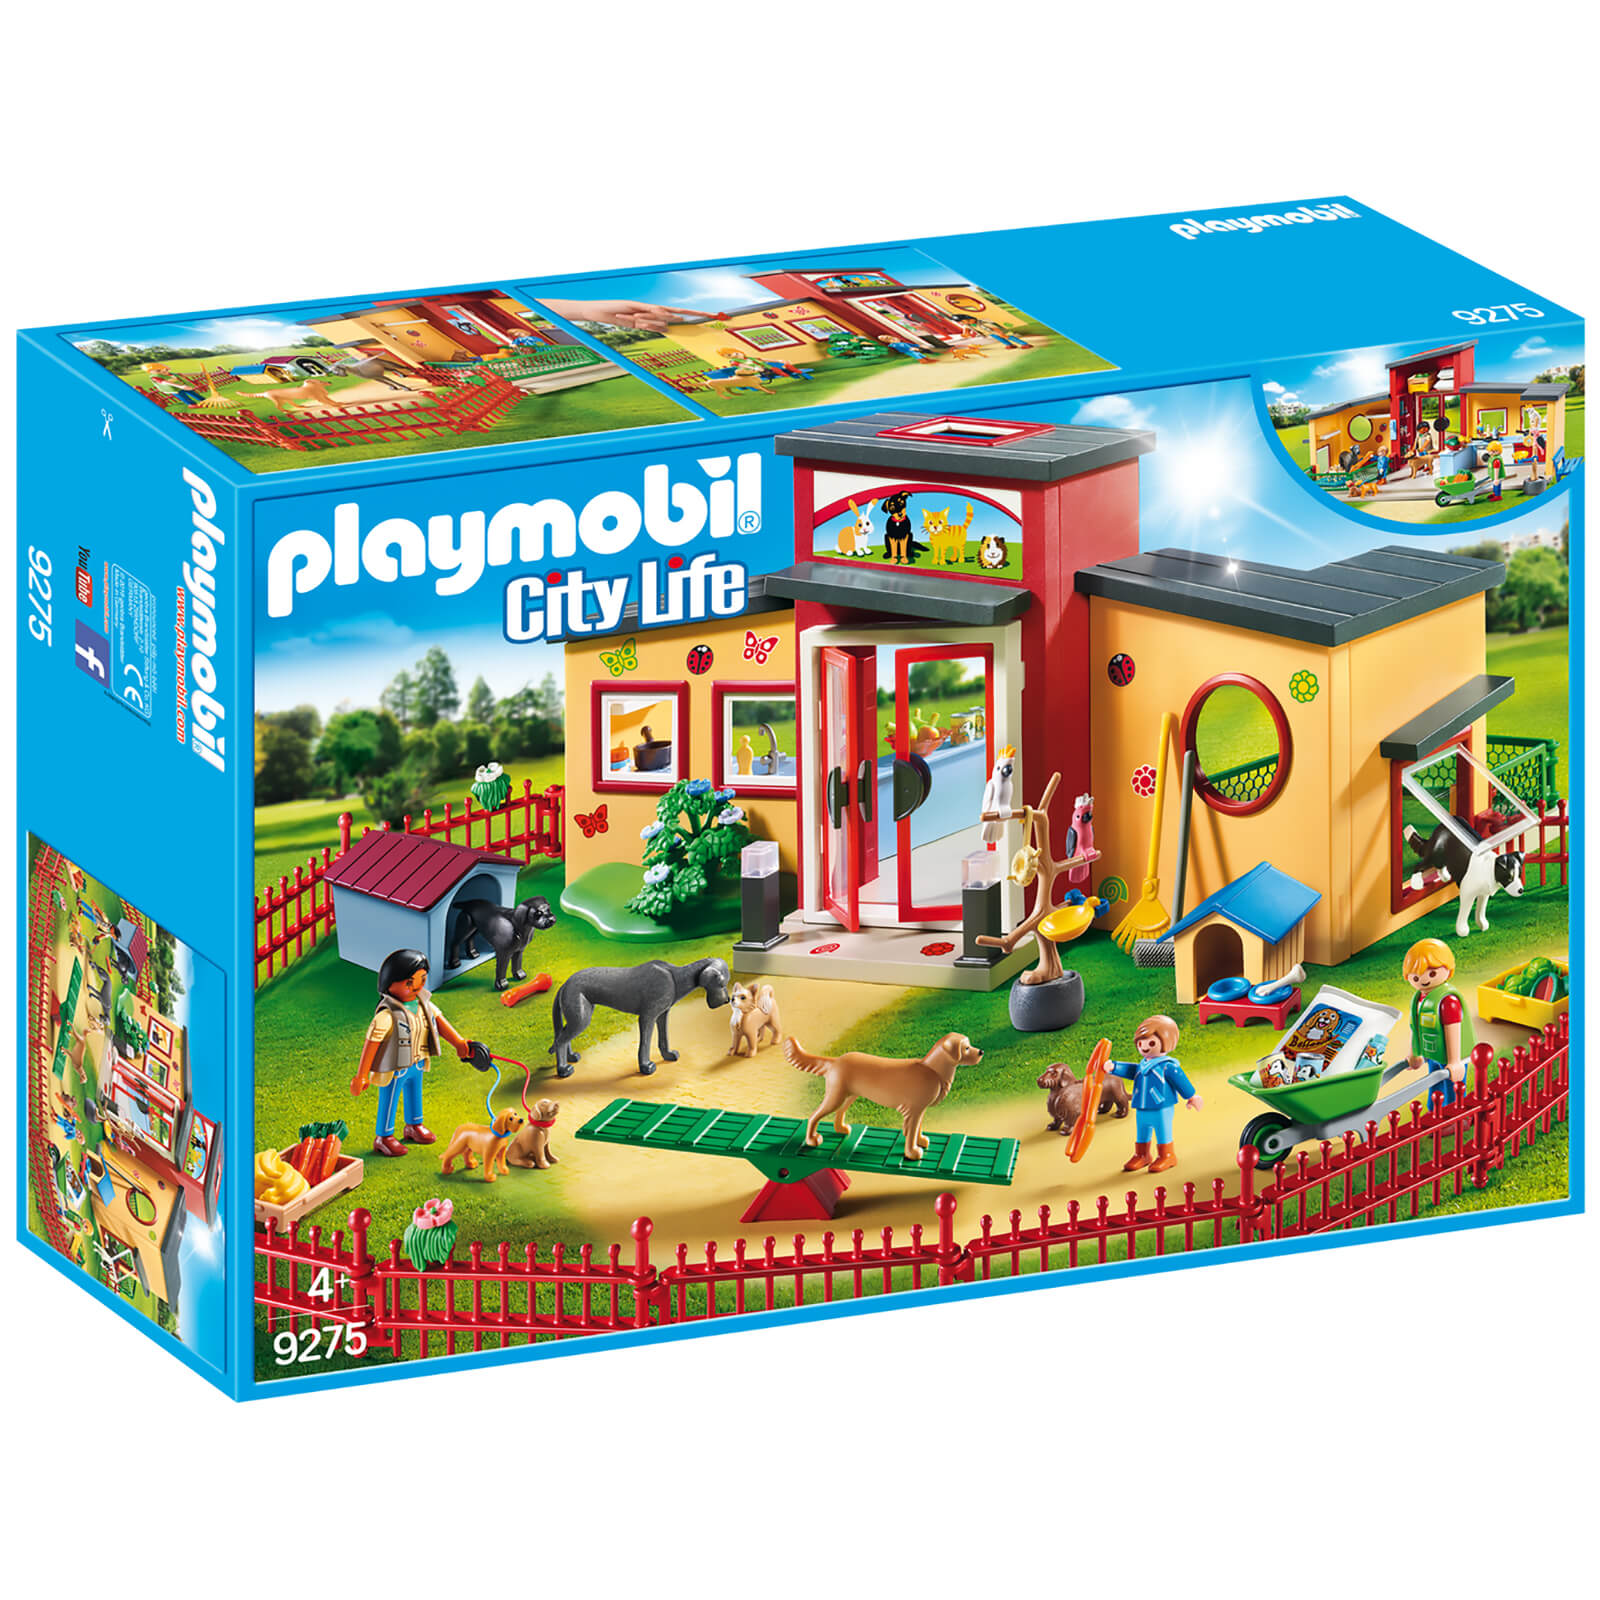 Playmobil City Life Tiny Paws Pet Hotel (9275)